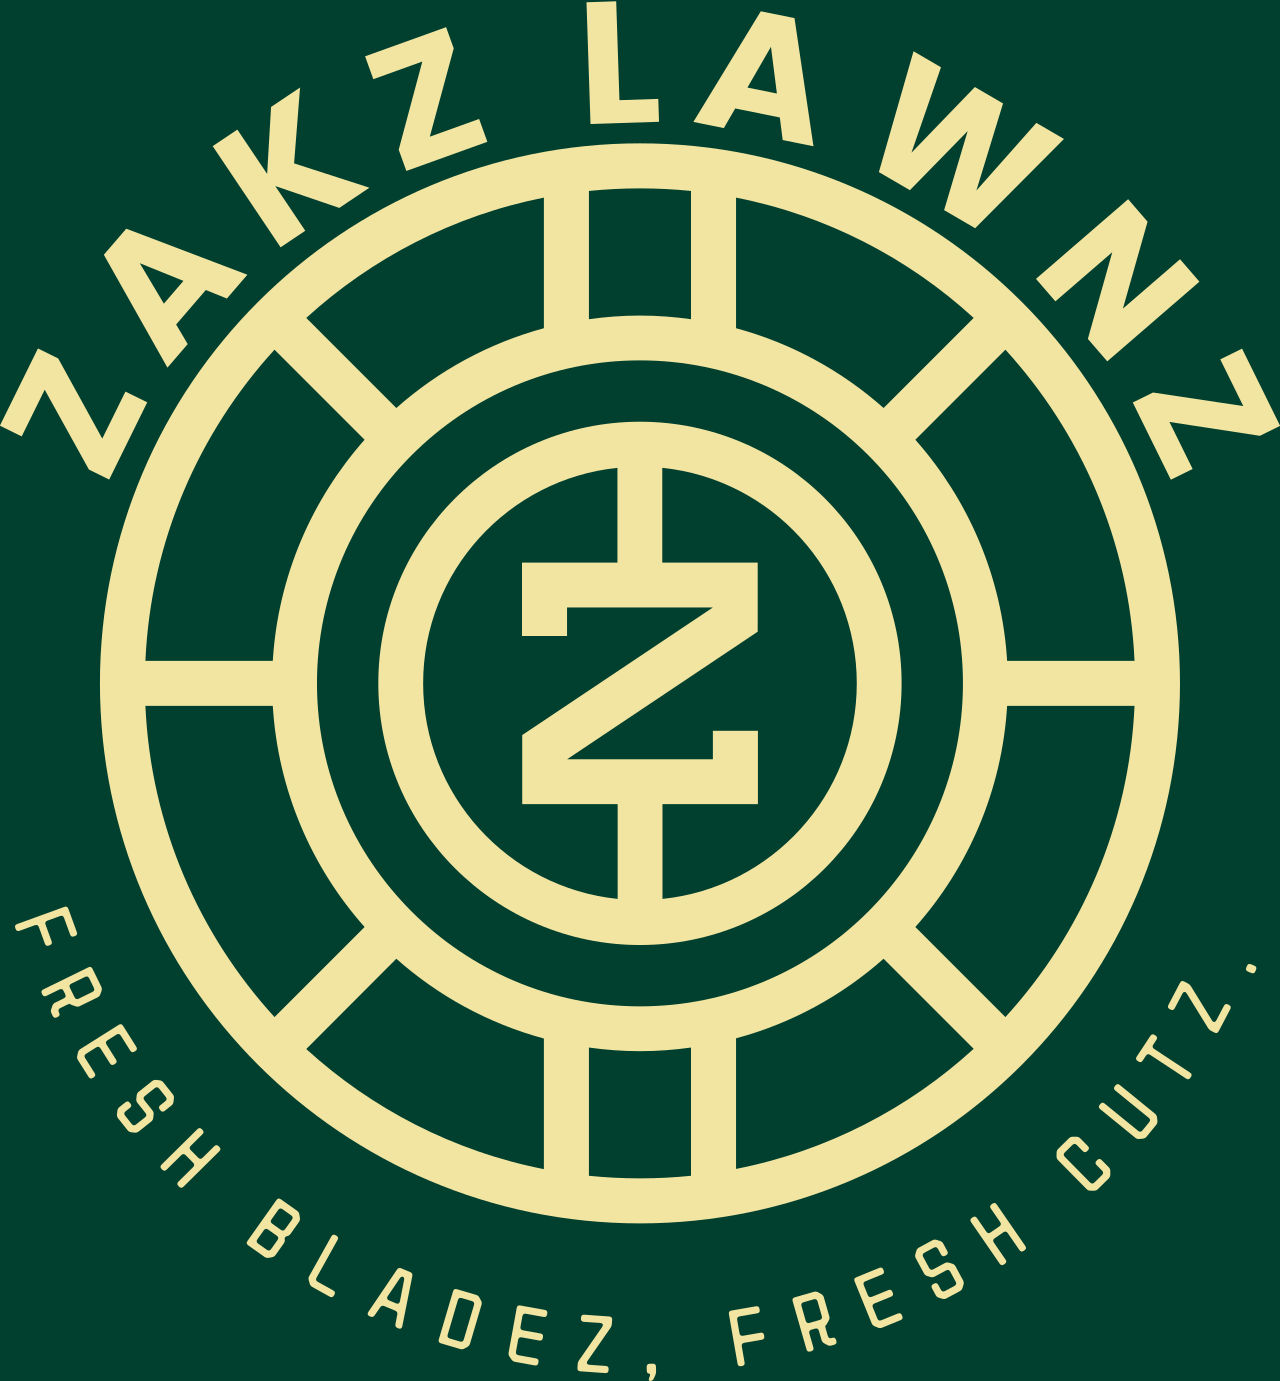 ZAKZ LAWNZ's logo